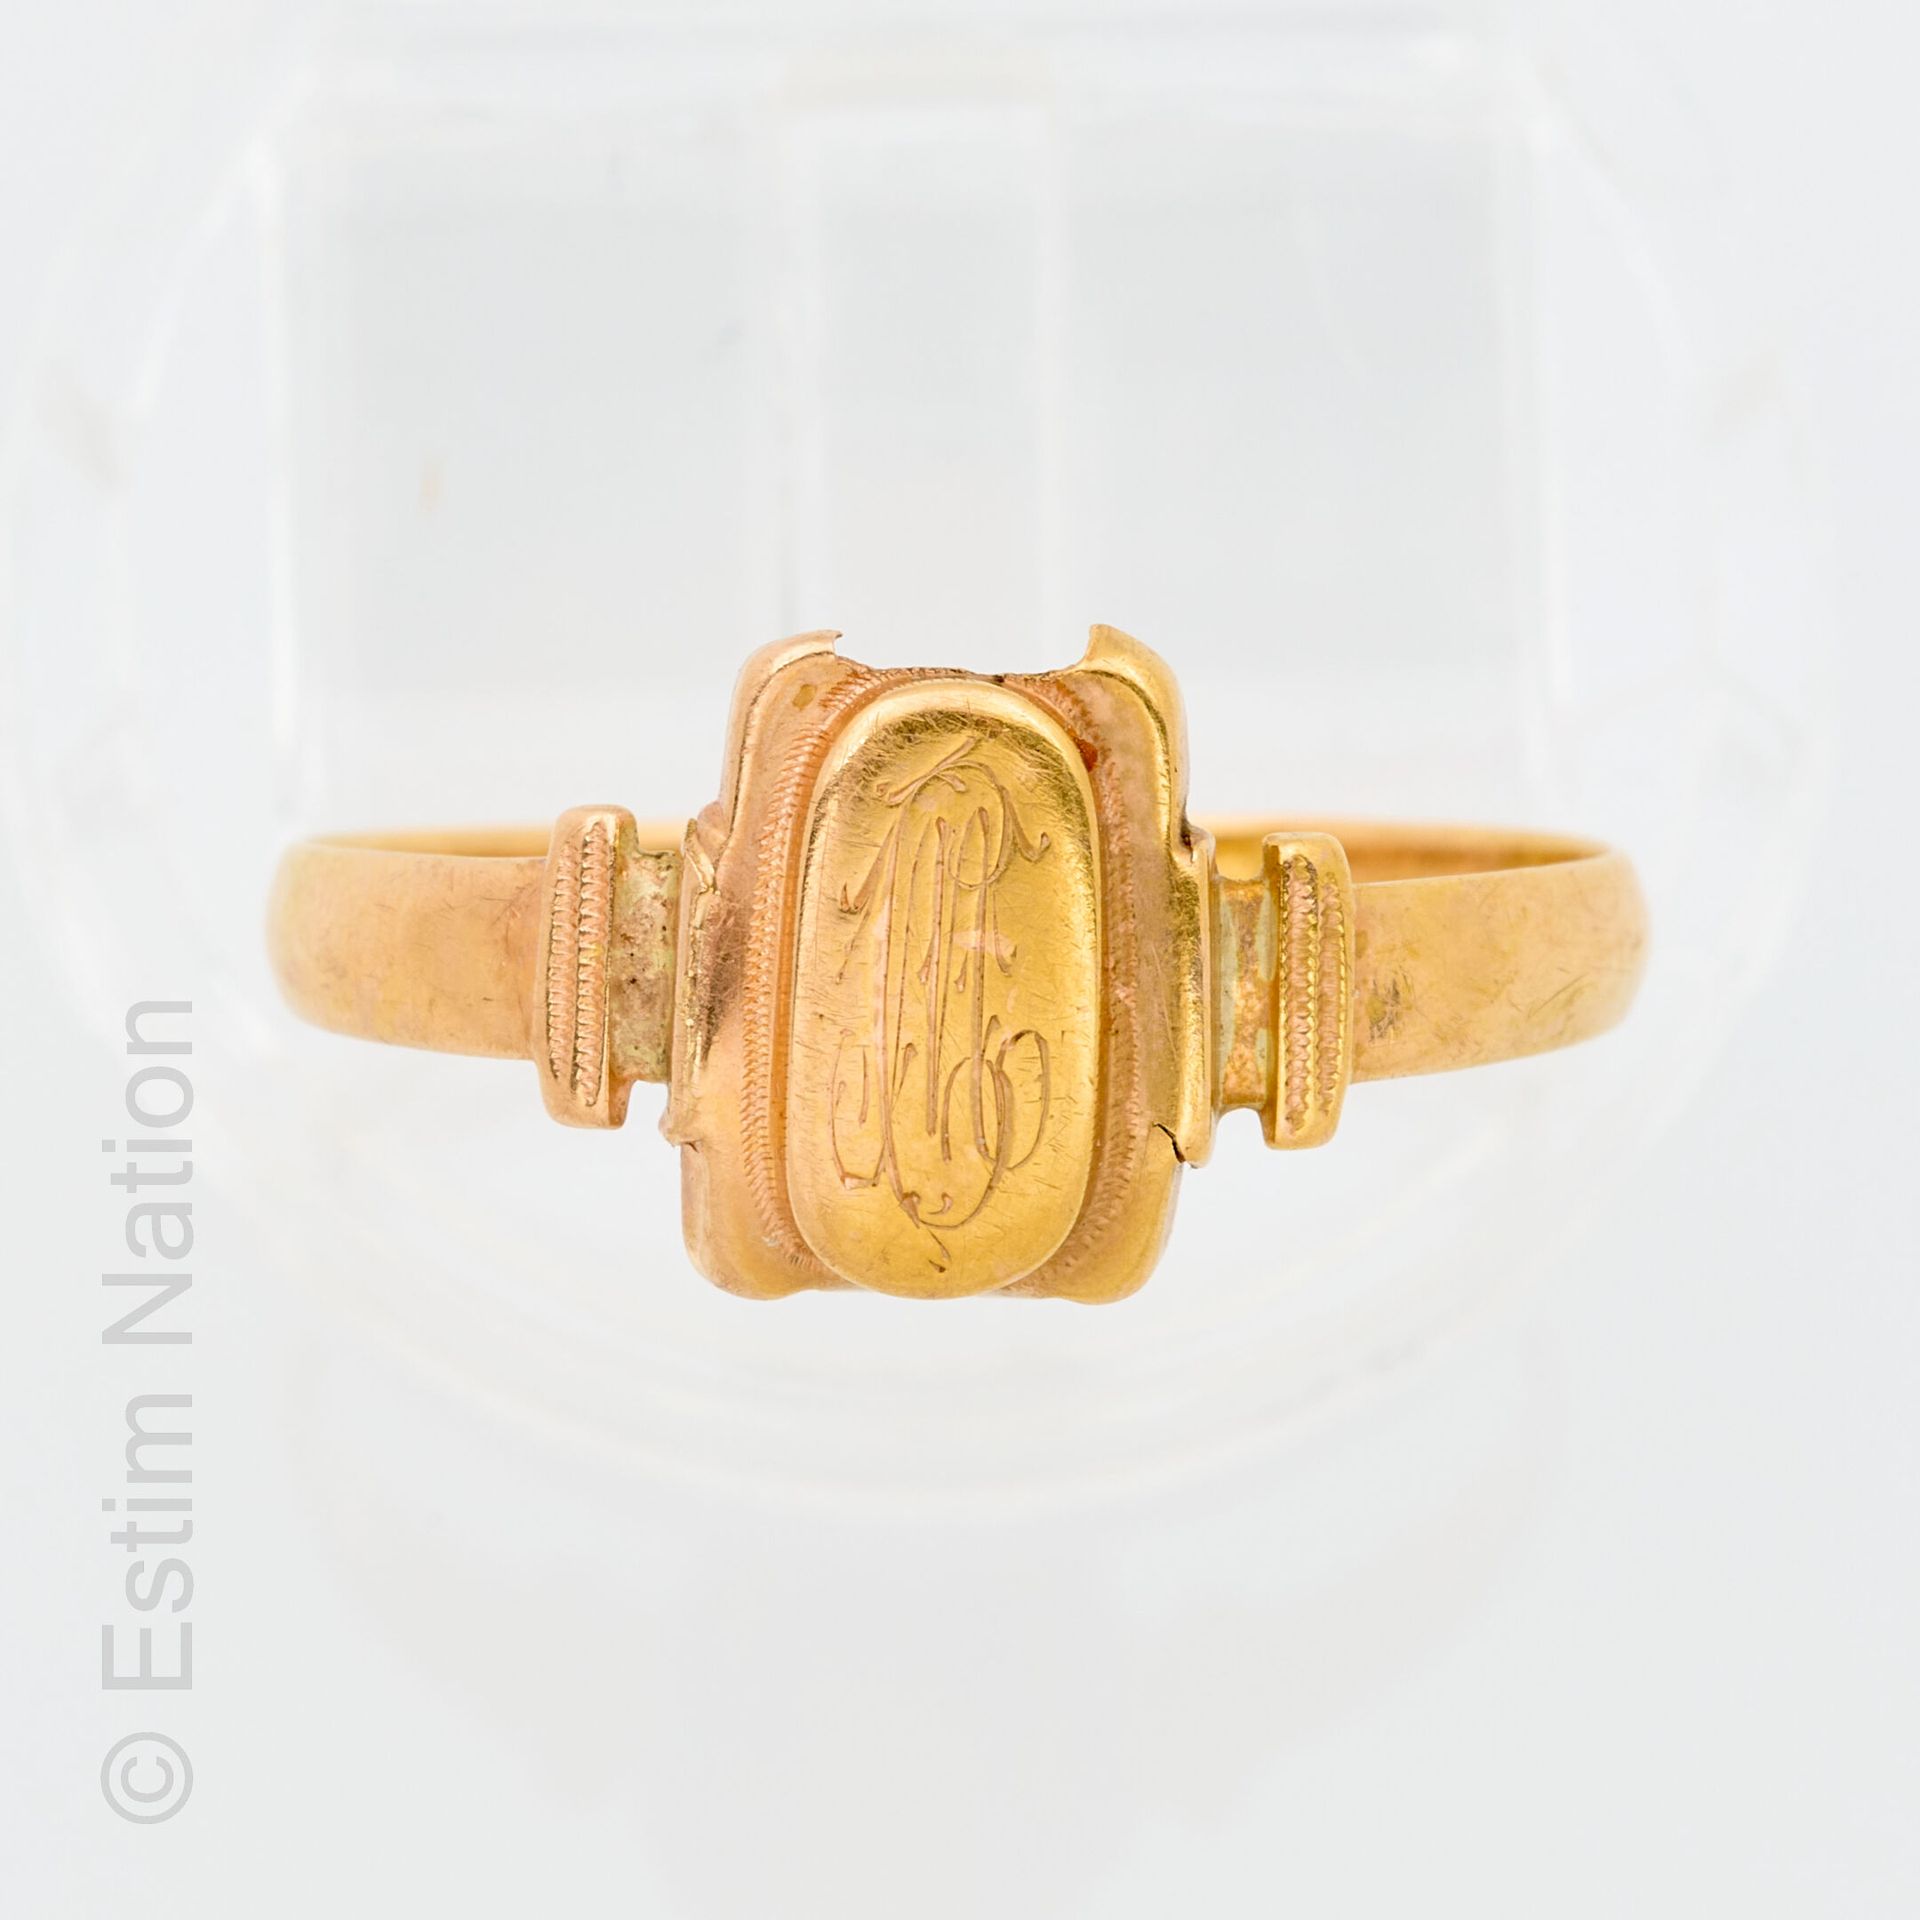 BAGUE OR JAUNE ARMOIRIES 18K黄金（千分之七十五）精细戒指，中间刻有国徽图案。手指周长：55。重1,2克。(小事故)。